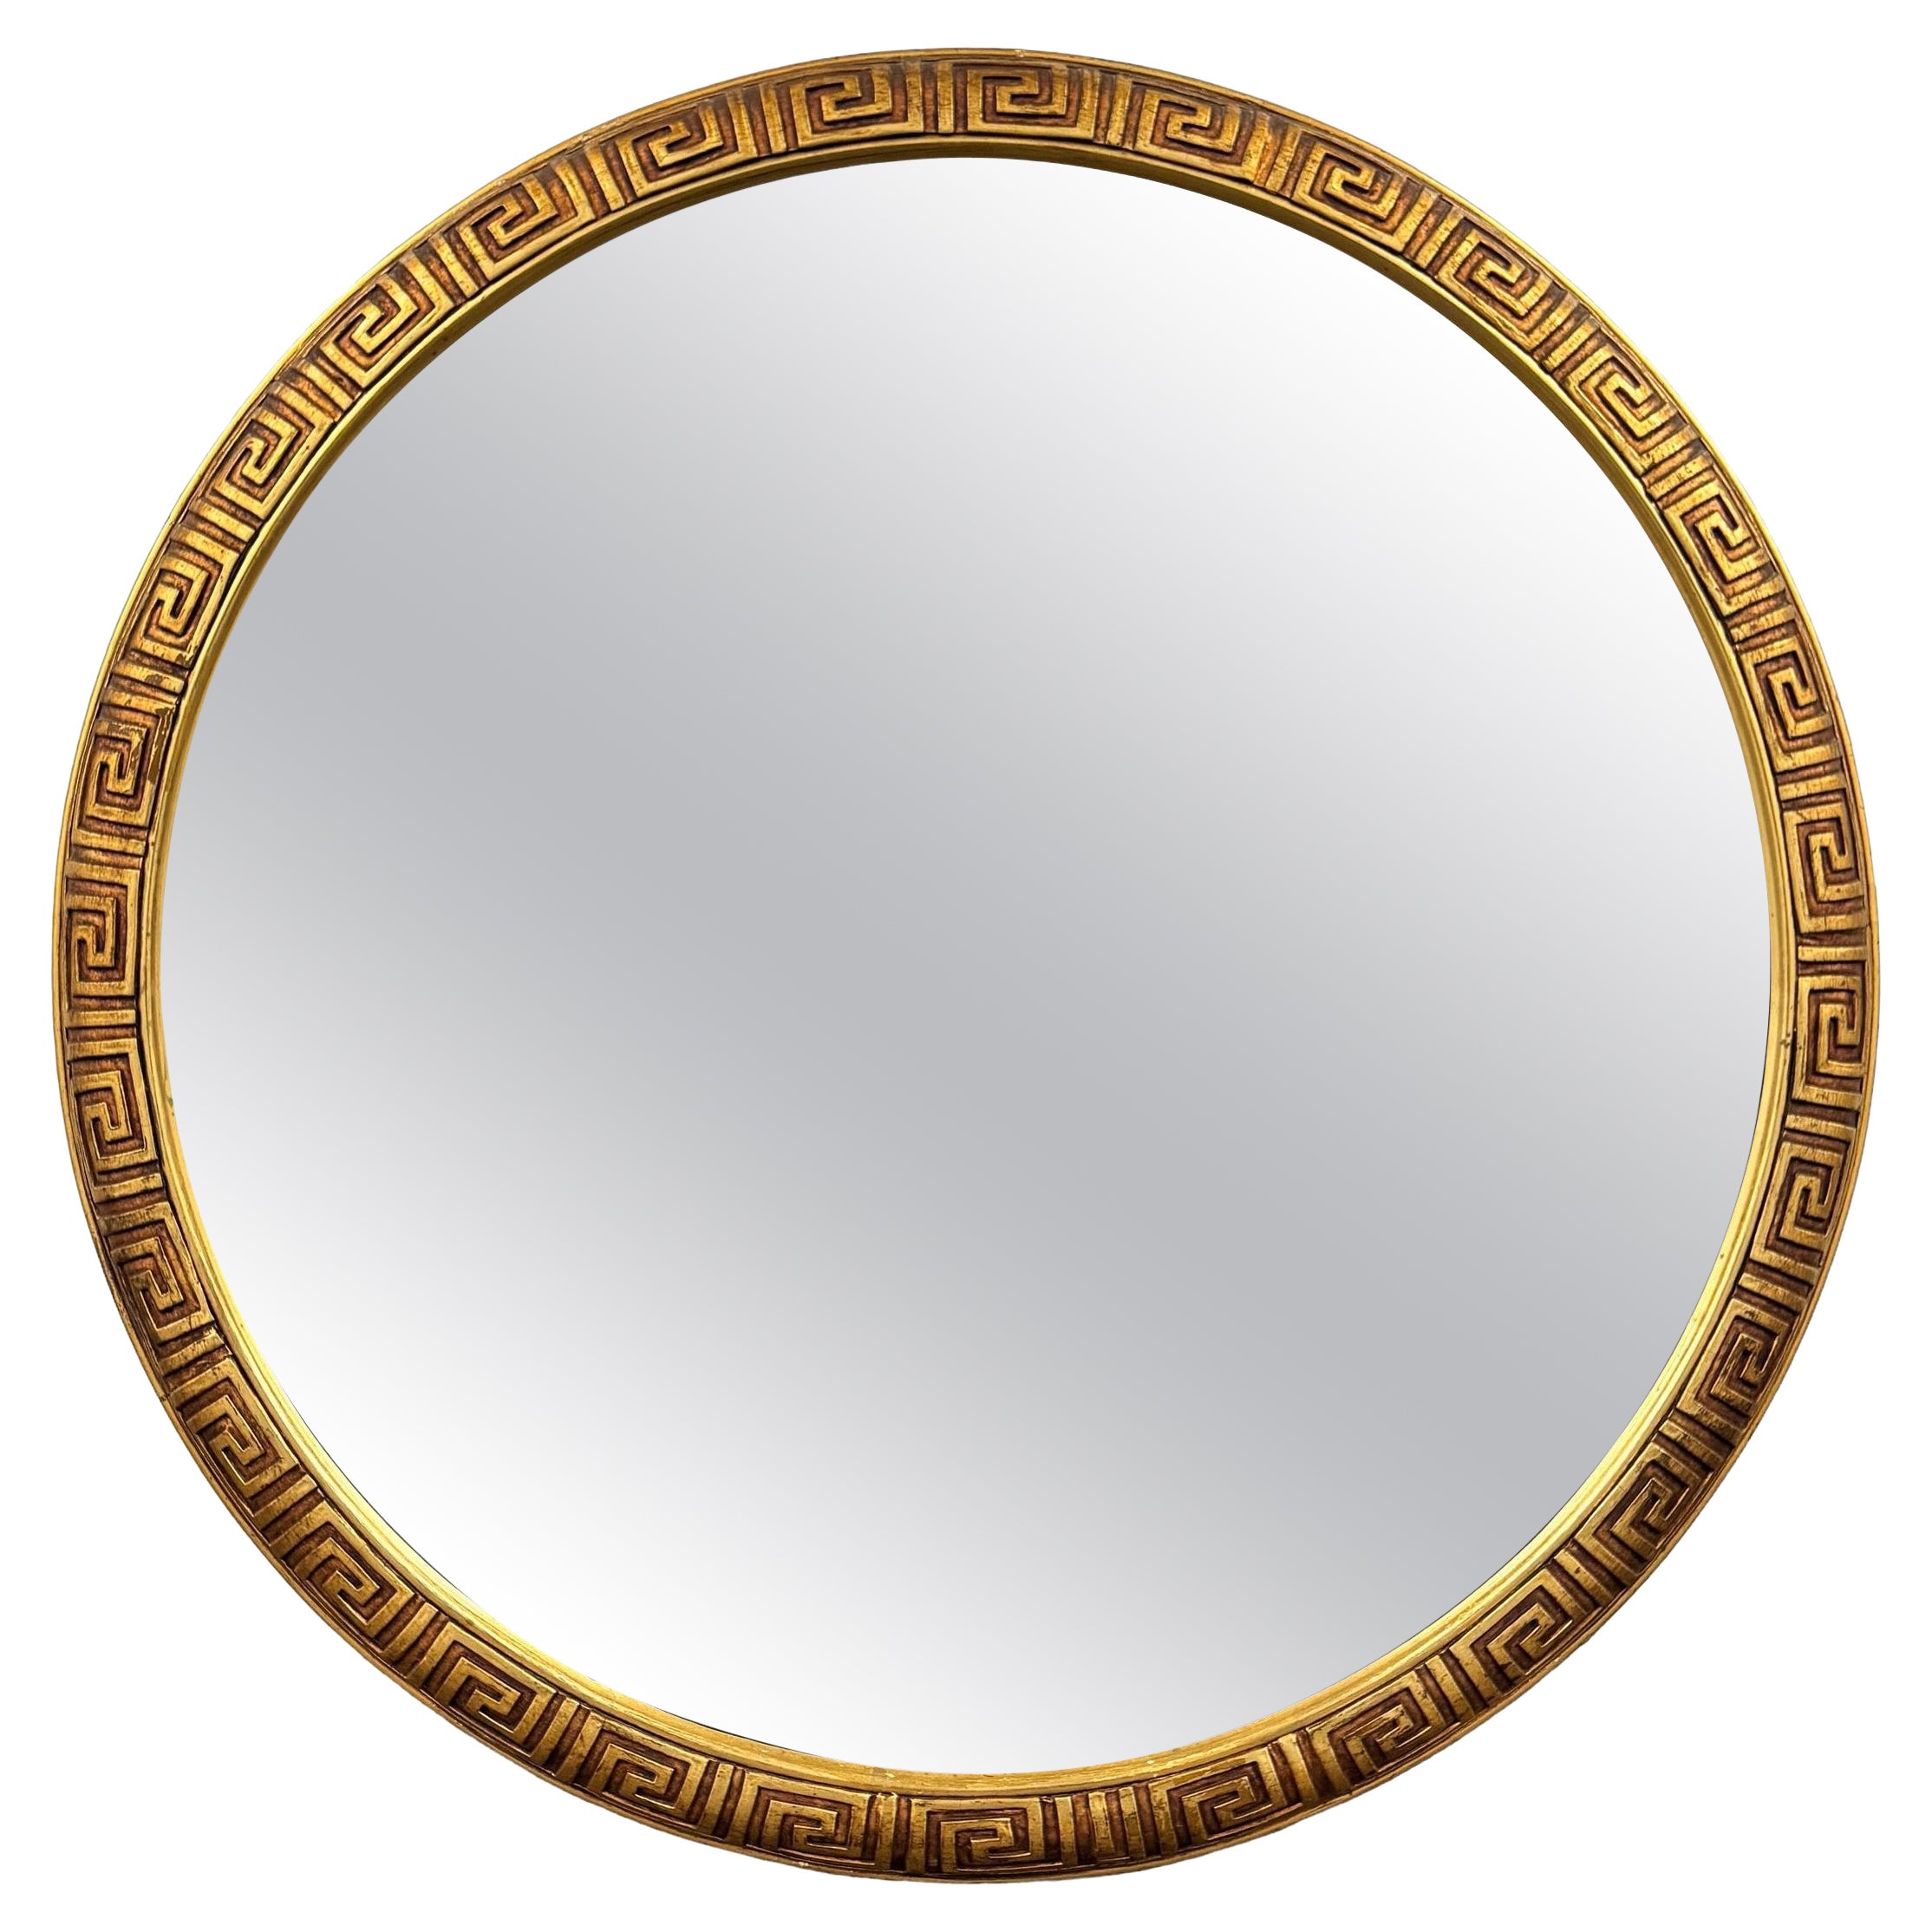 Mid-20th Century American Greek Key Giltwood Framed Mirror For Sale